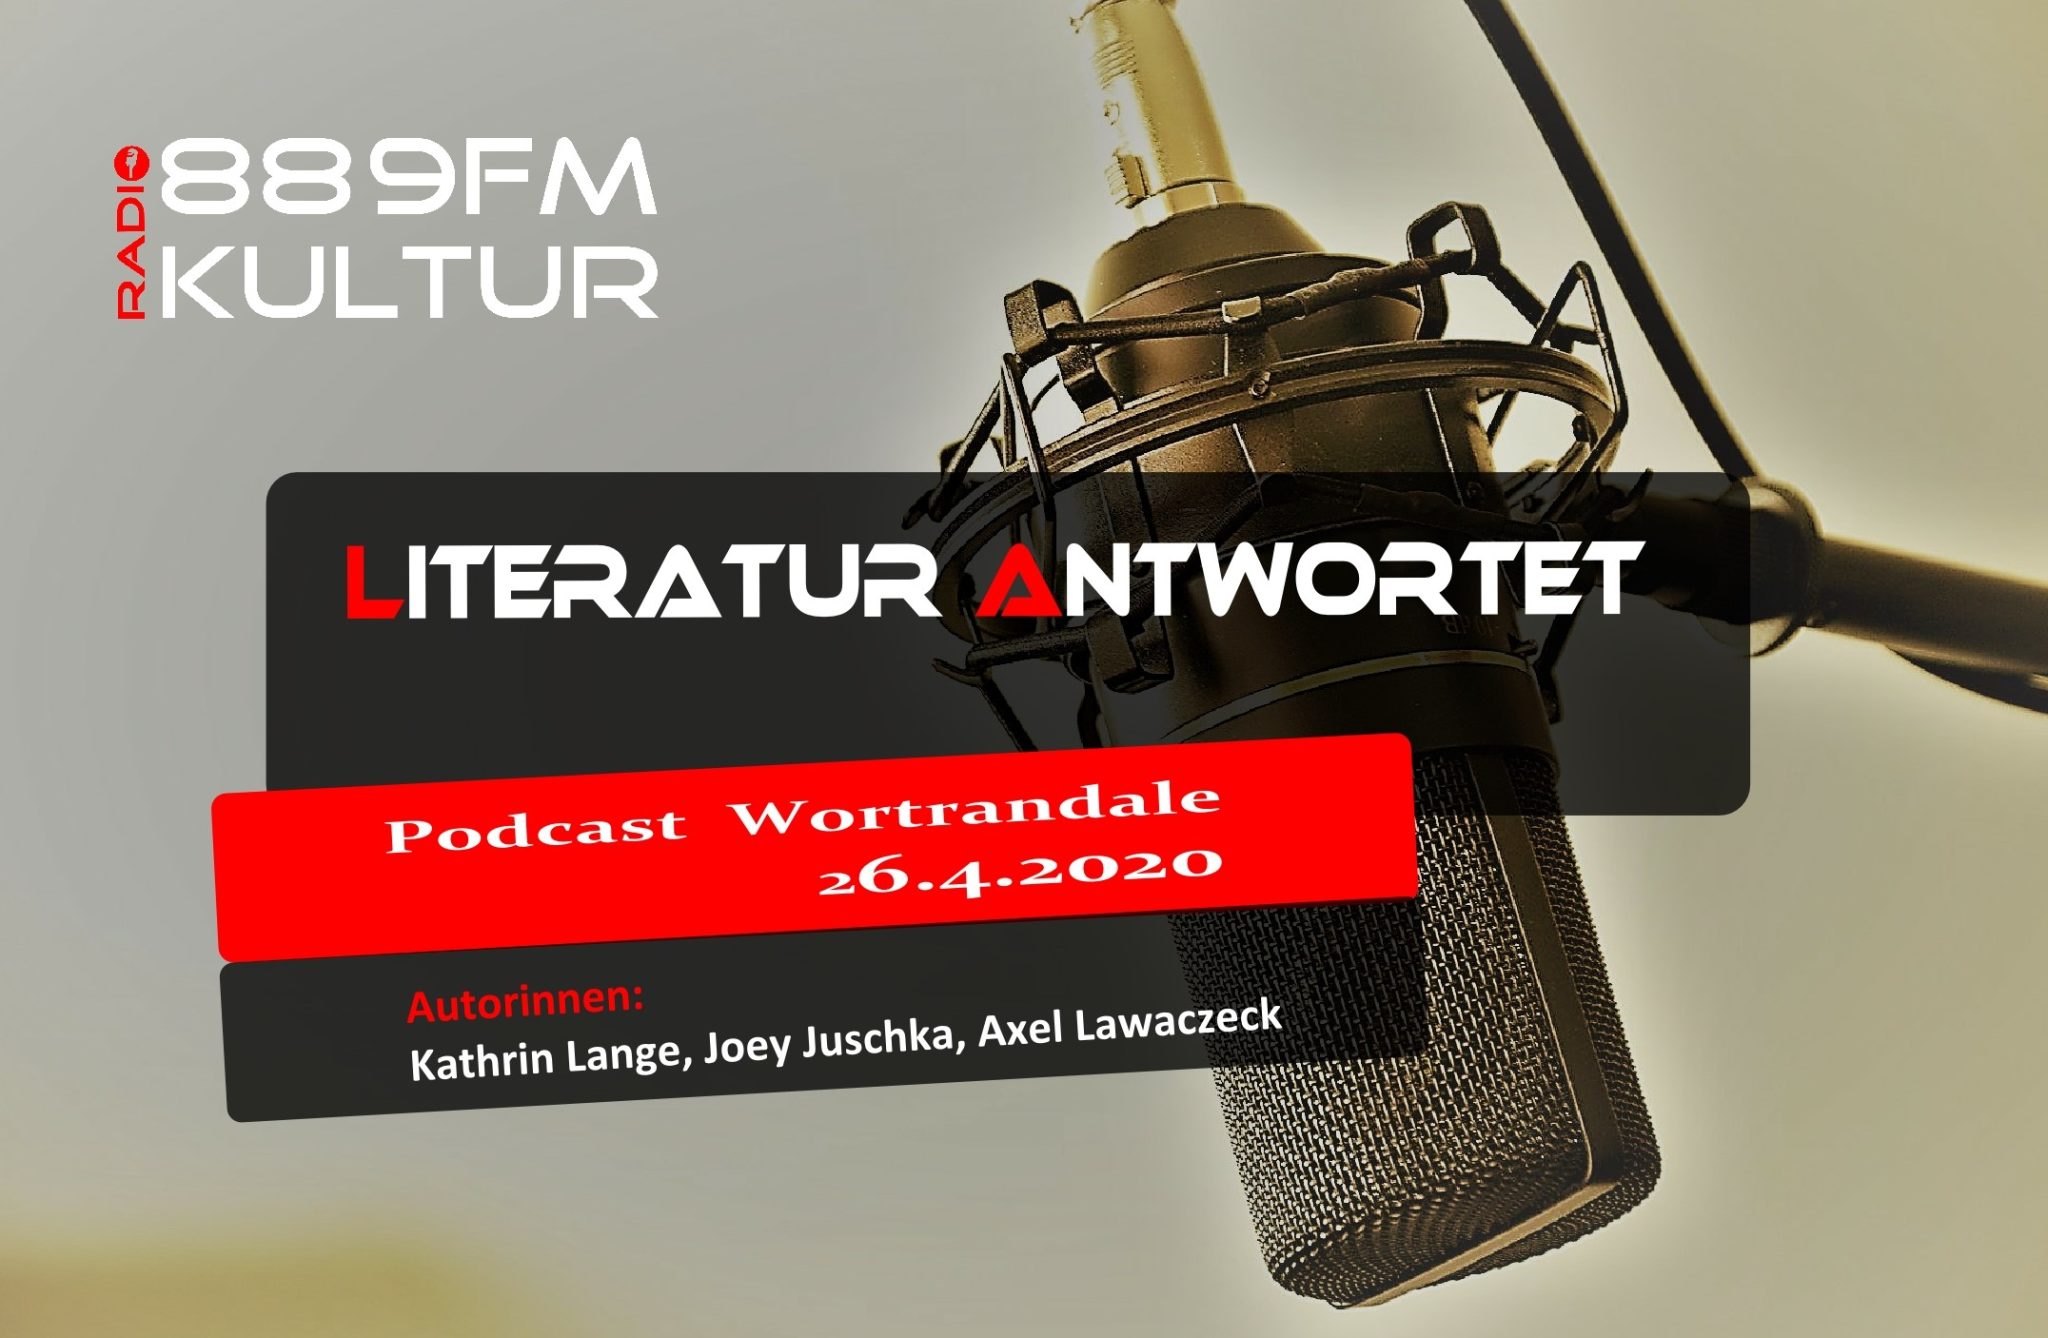 Podcast 26.4.2020, Literatur antwortet